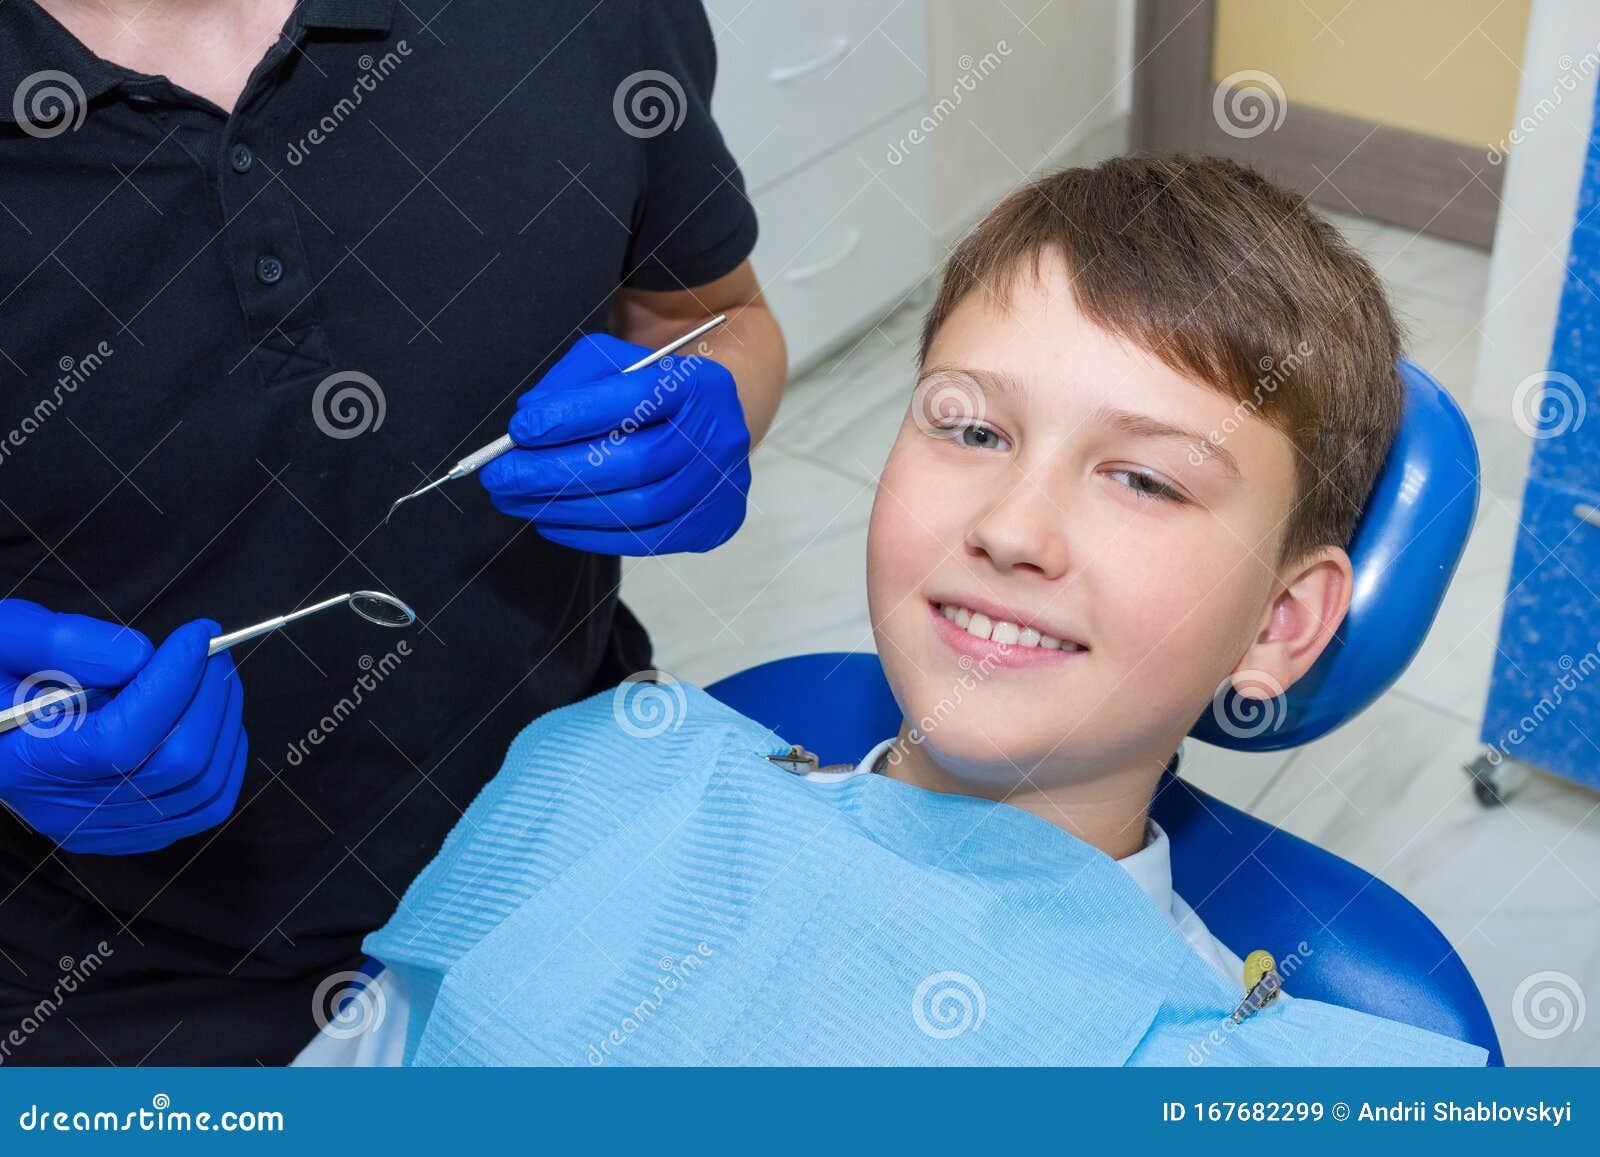 a child at the dentistÃ¢â¬â¢s consultation